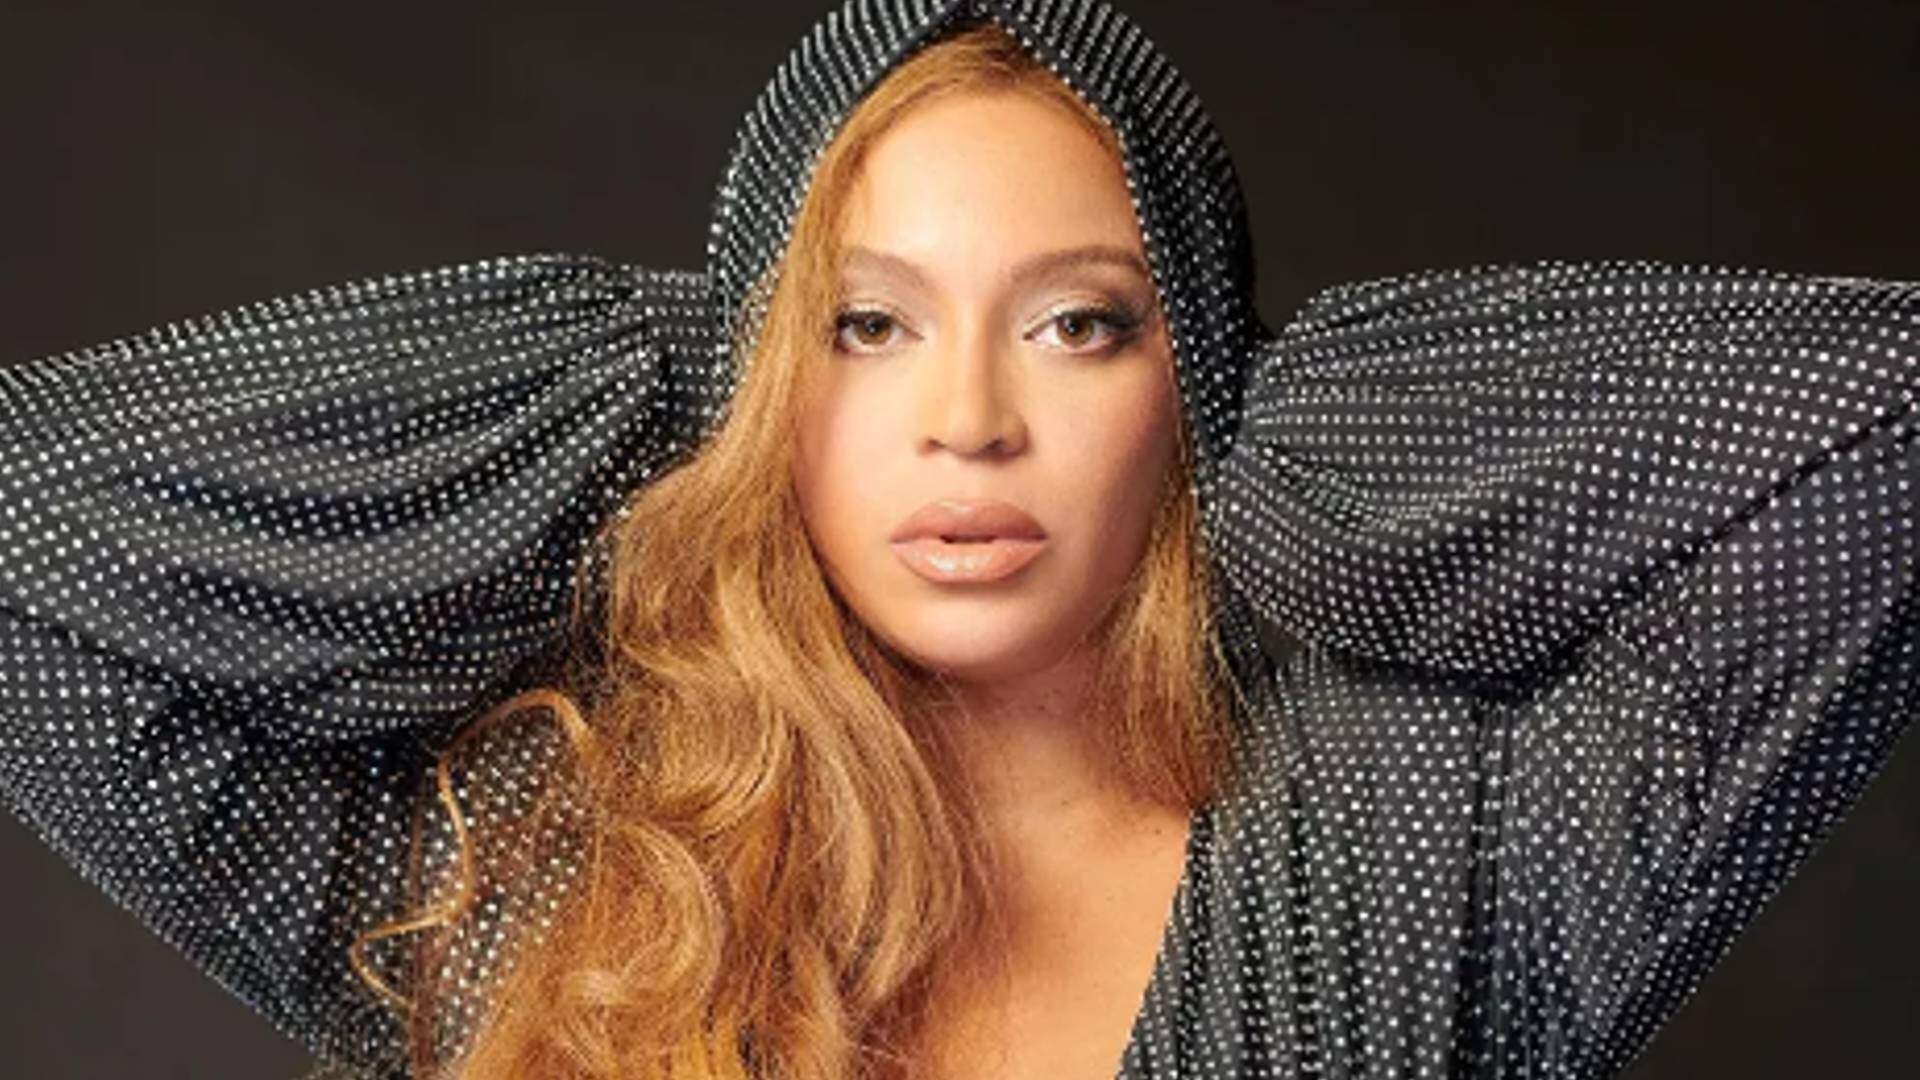 De surpresa, Beyoncé divulga teaser enigmático de nova música e deixa fãs ansiosos: “Lança logo!” - Metropolitana FM